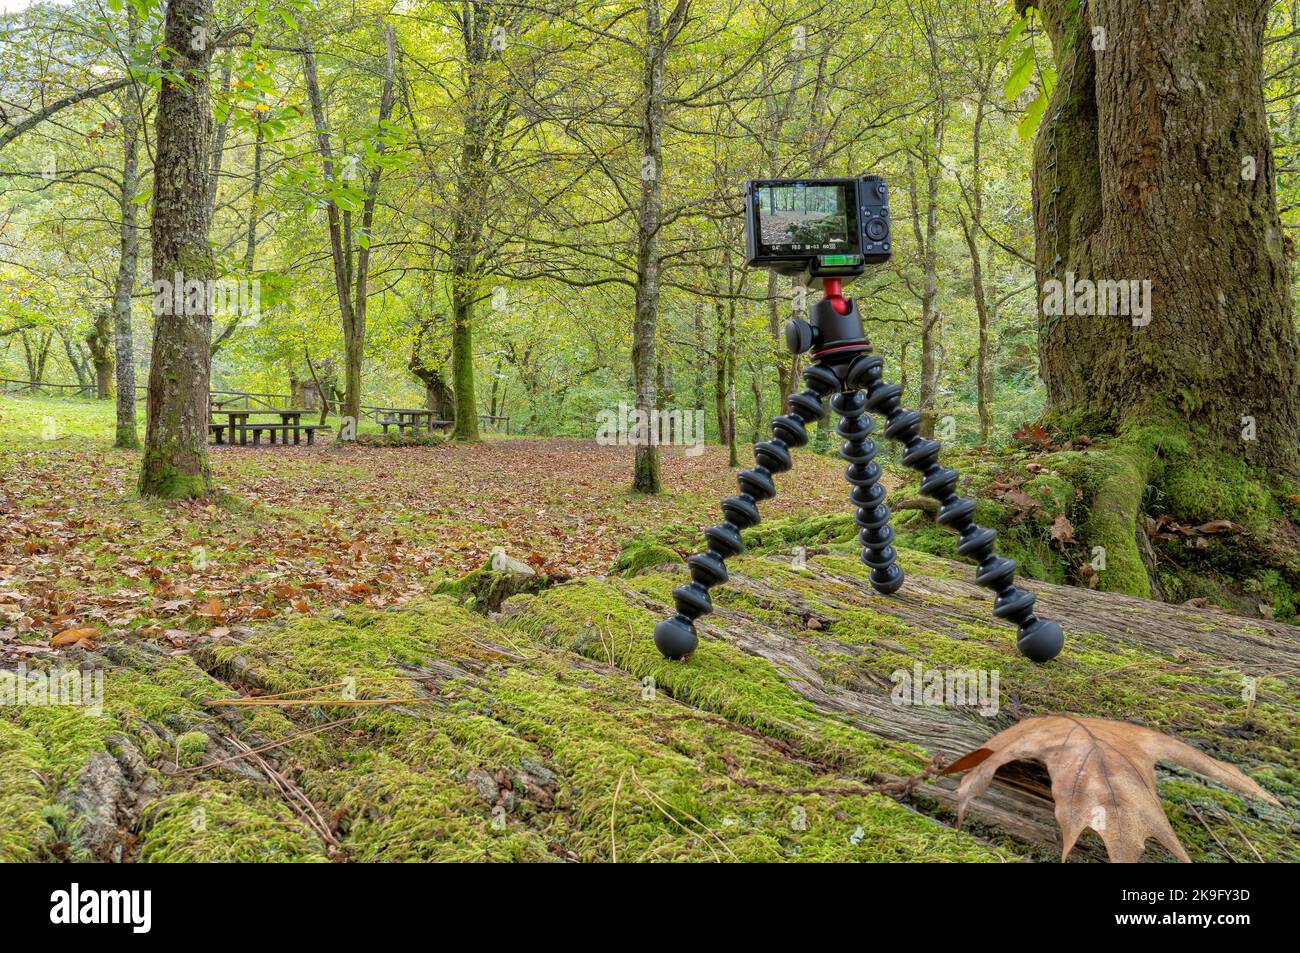 Un appareil photo compact monté sur un trépied de voyage léger pour photographier une forêt en automne Banque D'Images